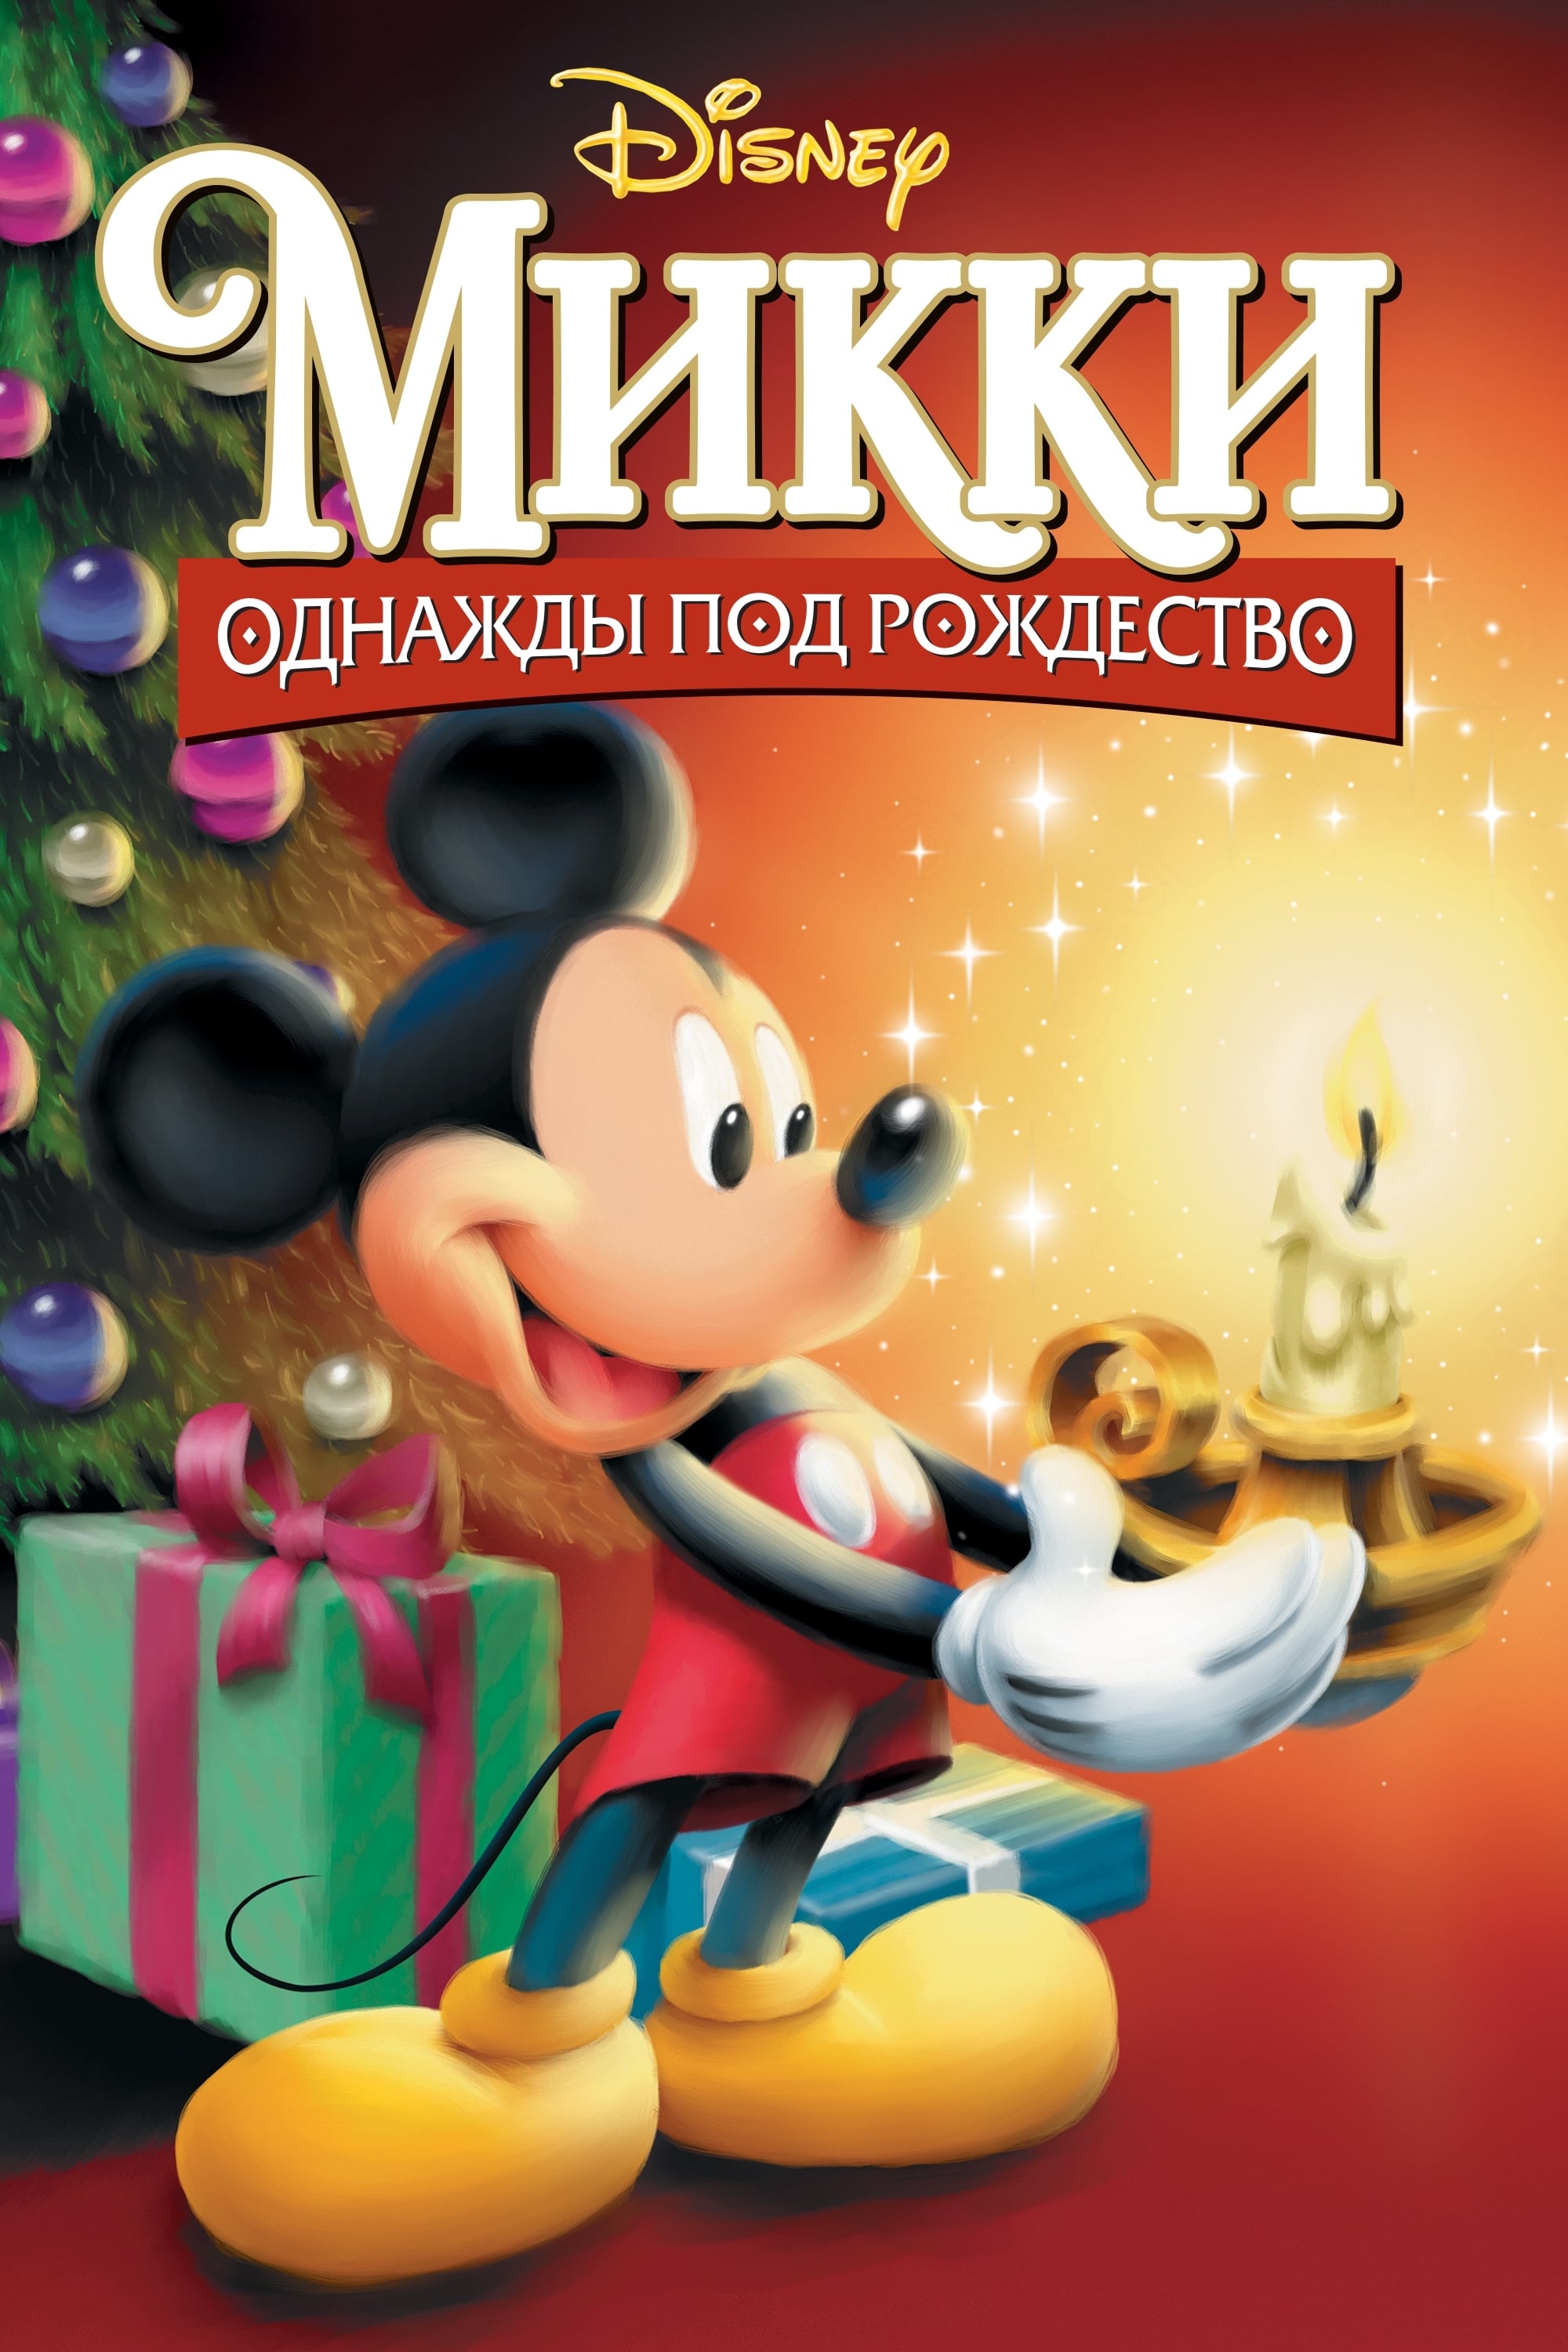 1999 Mickey's Once Upon A Christmas